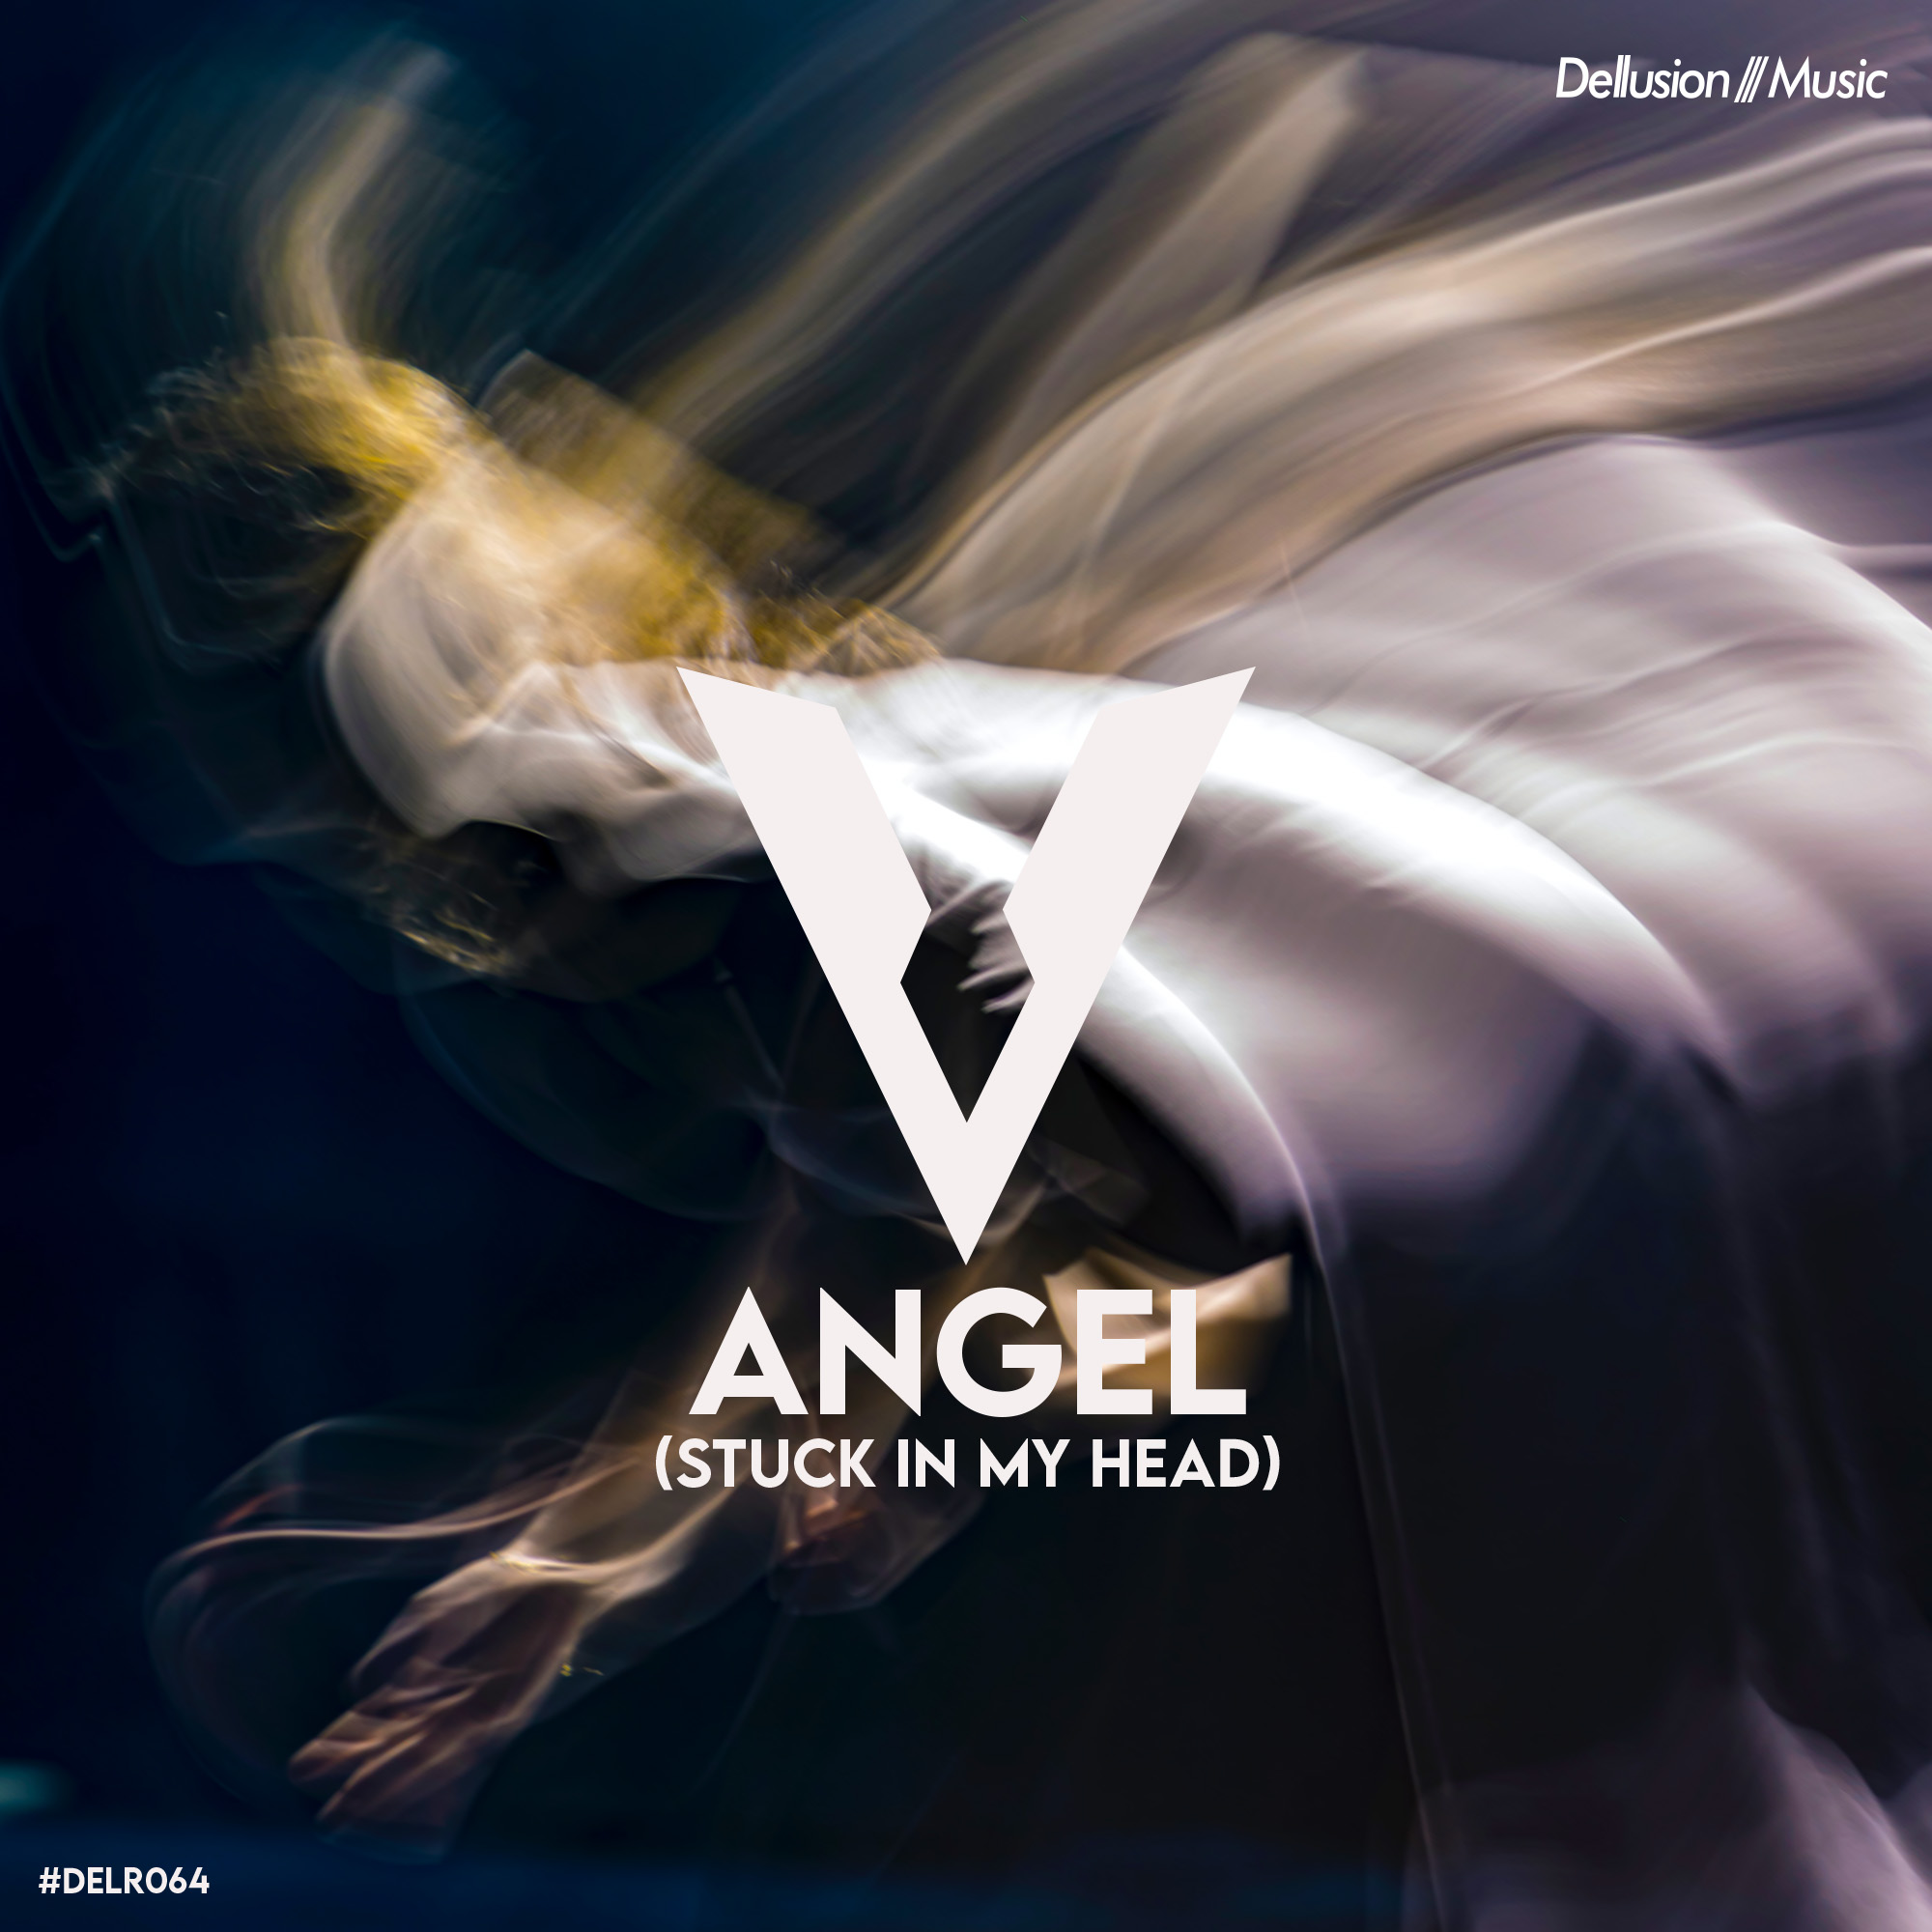 DragunoV - Angel (Stuck in My Head) release image